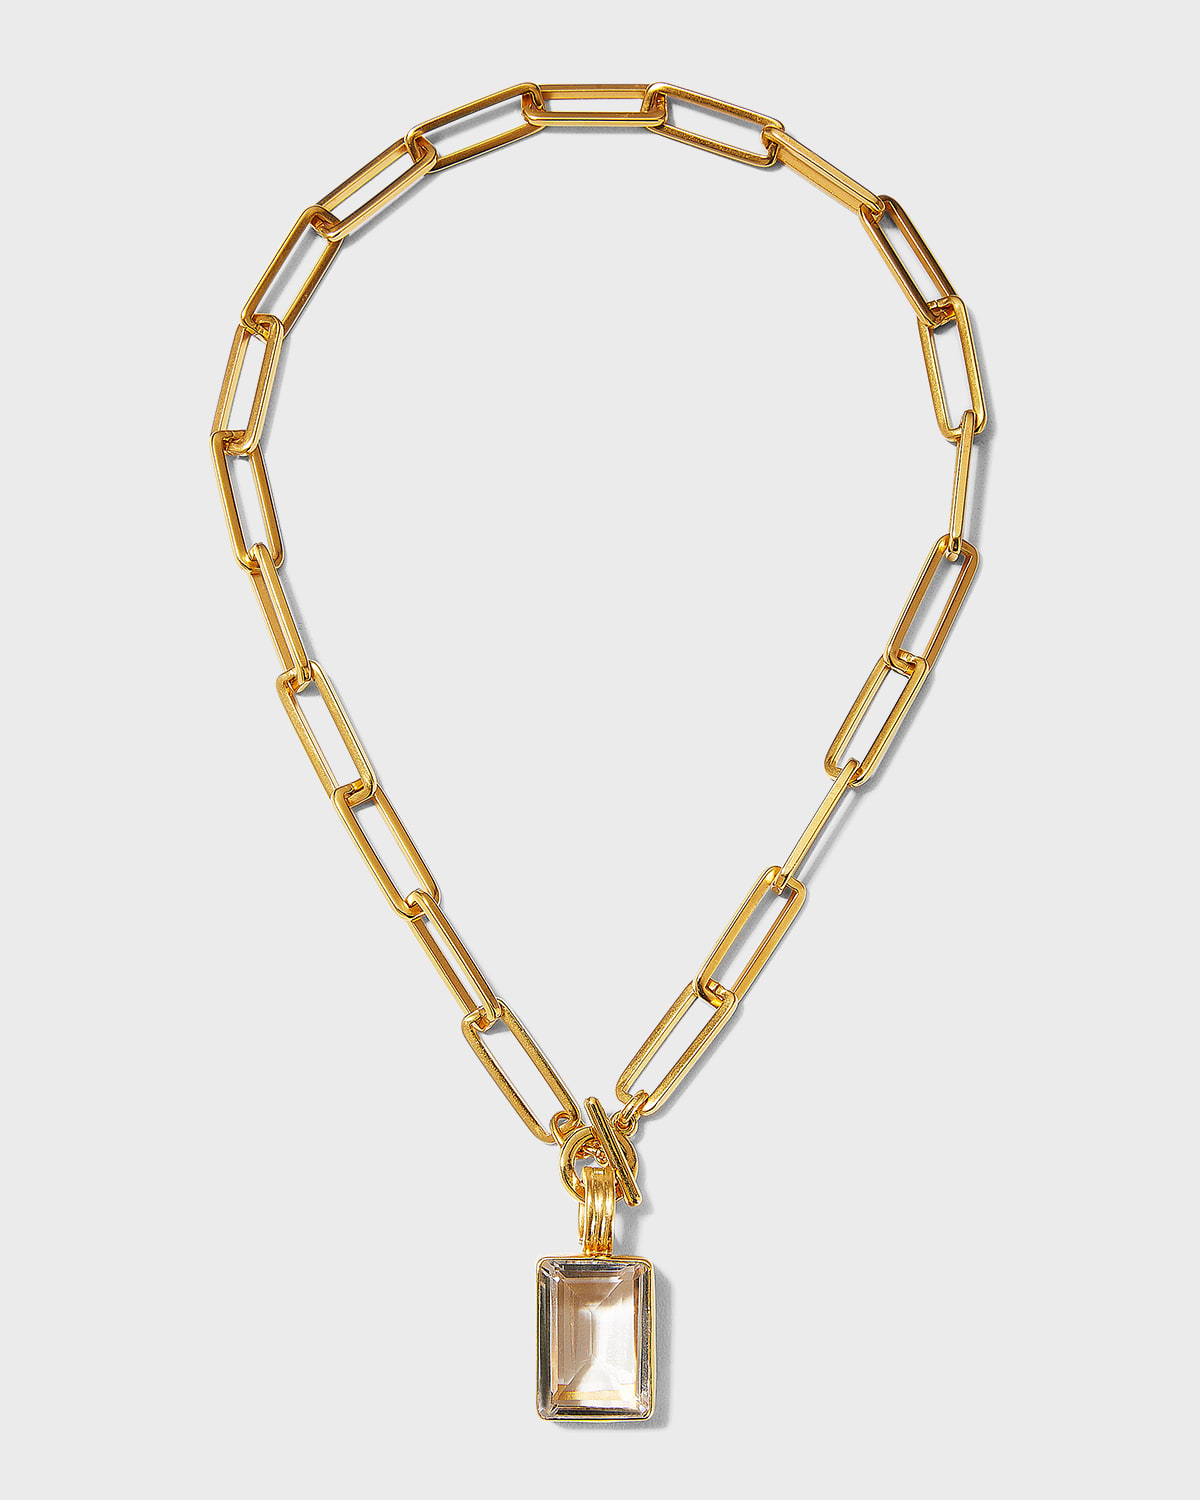 Emerald-Cut Faceted Quartz Pendant on Paperclip Chain Necklace